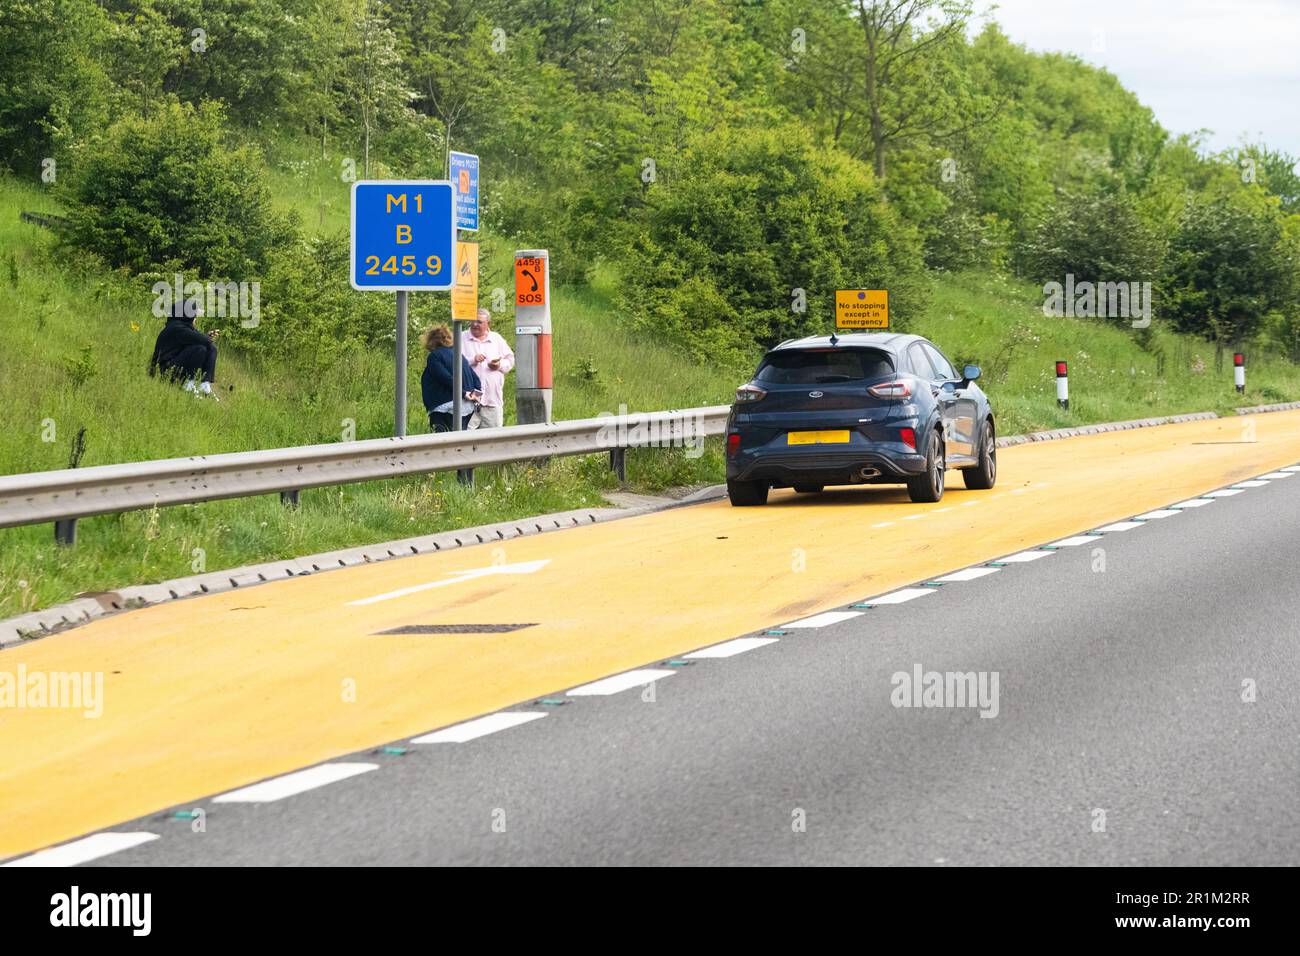 Intelligente Autobahn UK – Pannenfahrzeug, das im orangefarbenen Schutzgebiet geparkt ist und Passagiere hinter der Absturzsicherung auf dem Abschnitt der intelligenten Autobahn von M1 stehen Stockfoto